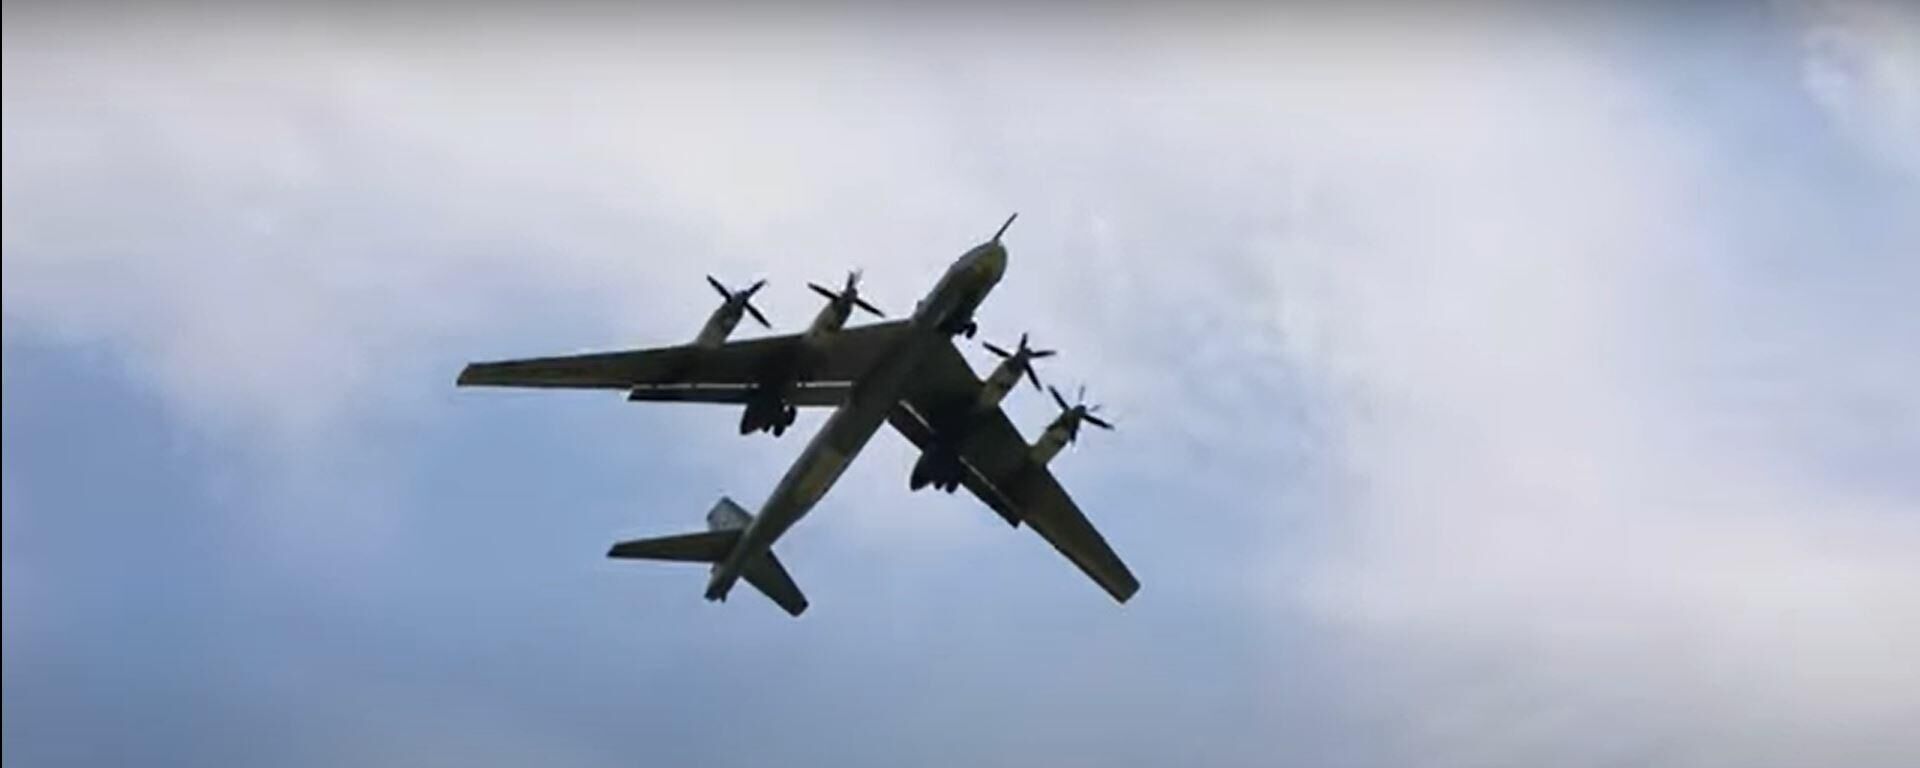 В небе Медведь: дозаправка в воздухе российского Ту-95МС - Sputnik Латвия, 1920, 30.07.2021